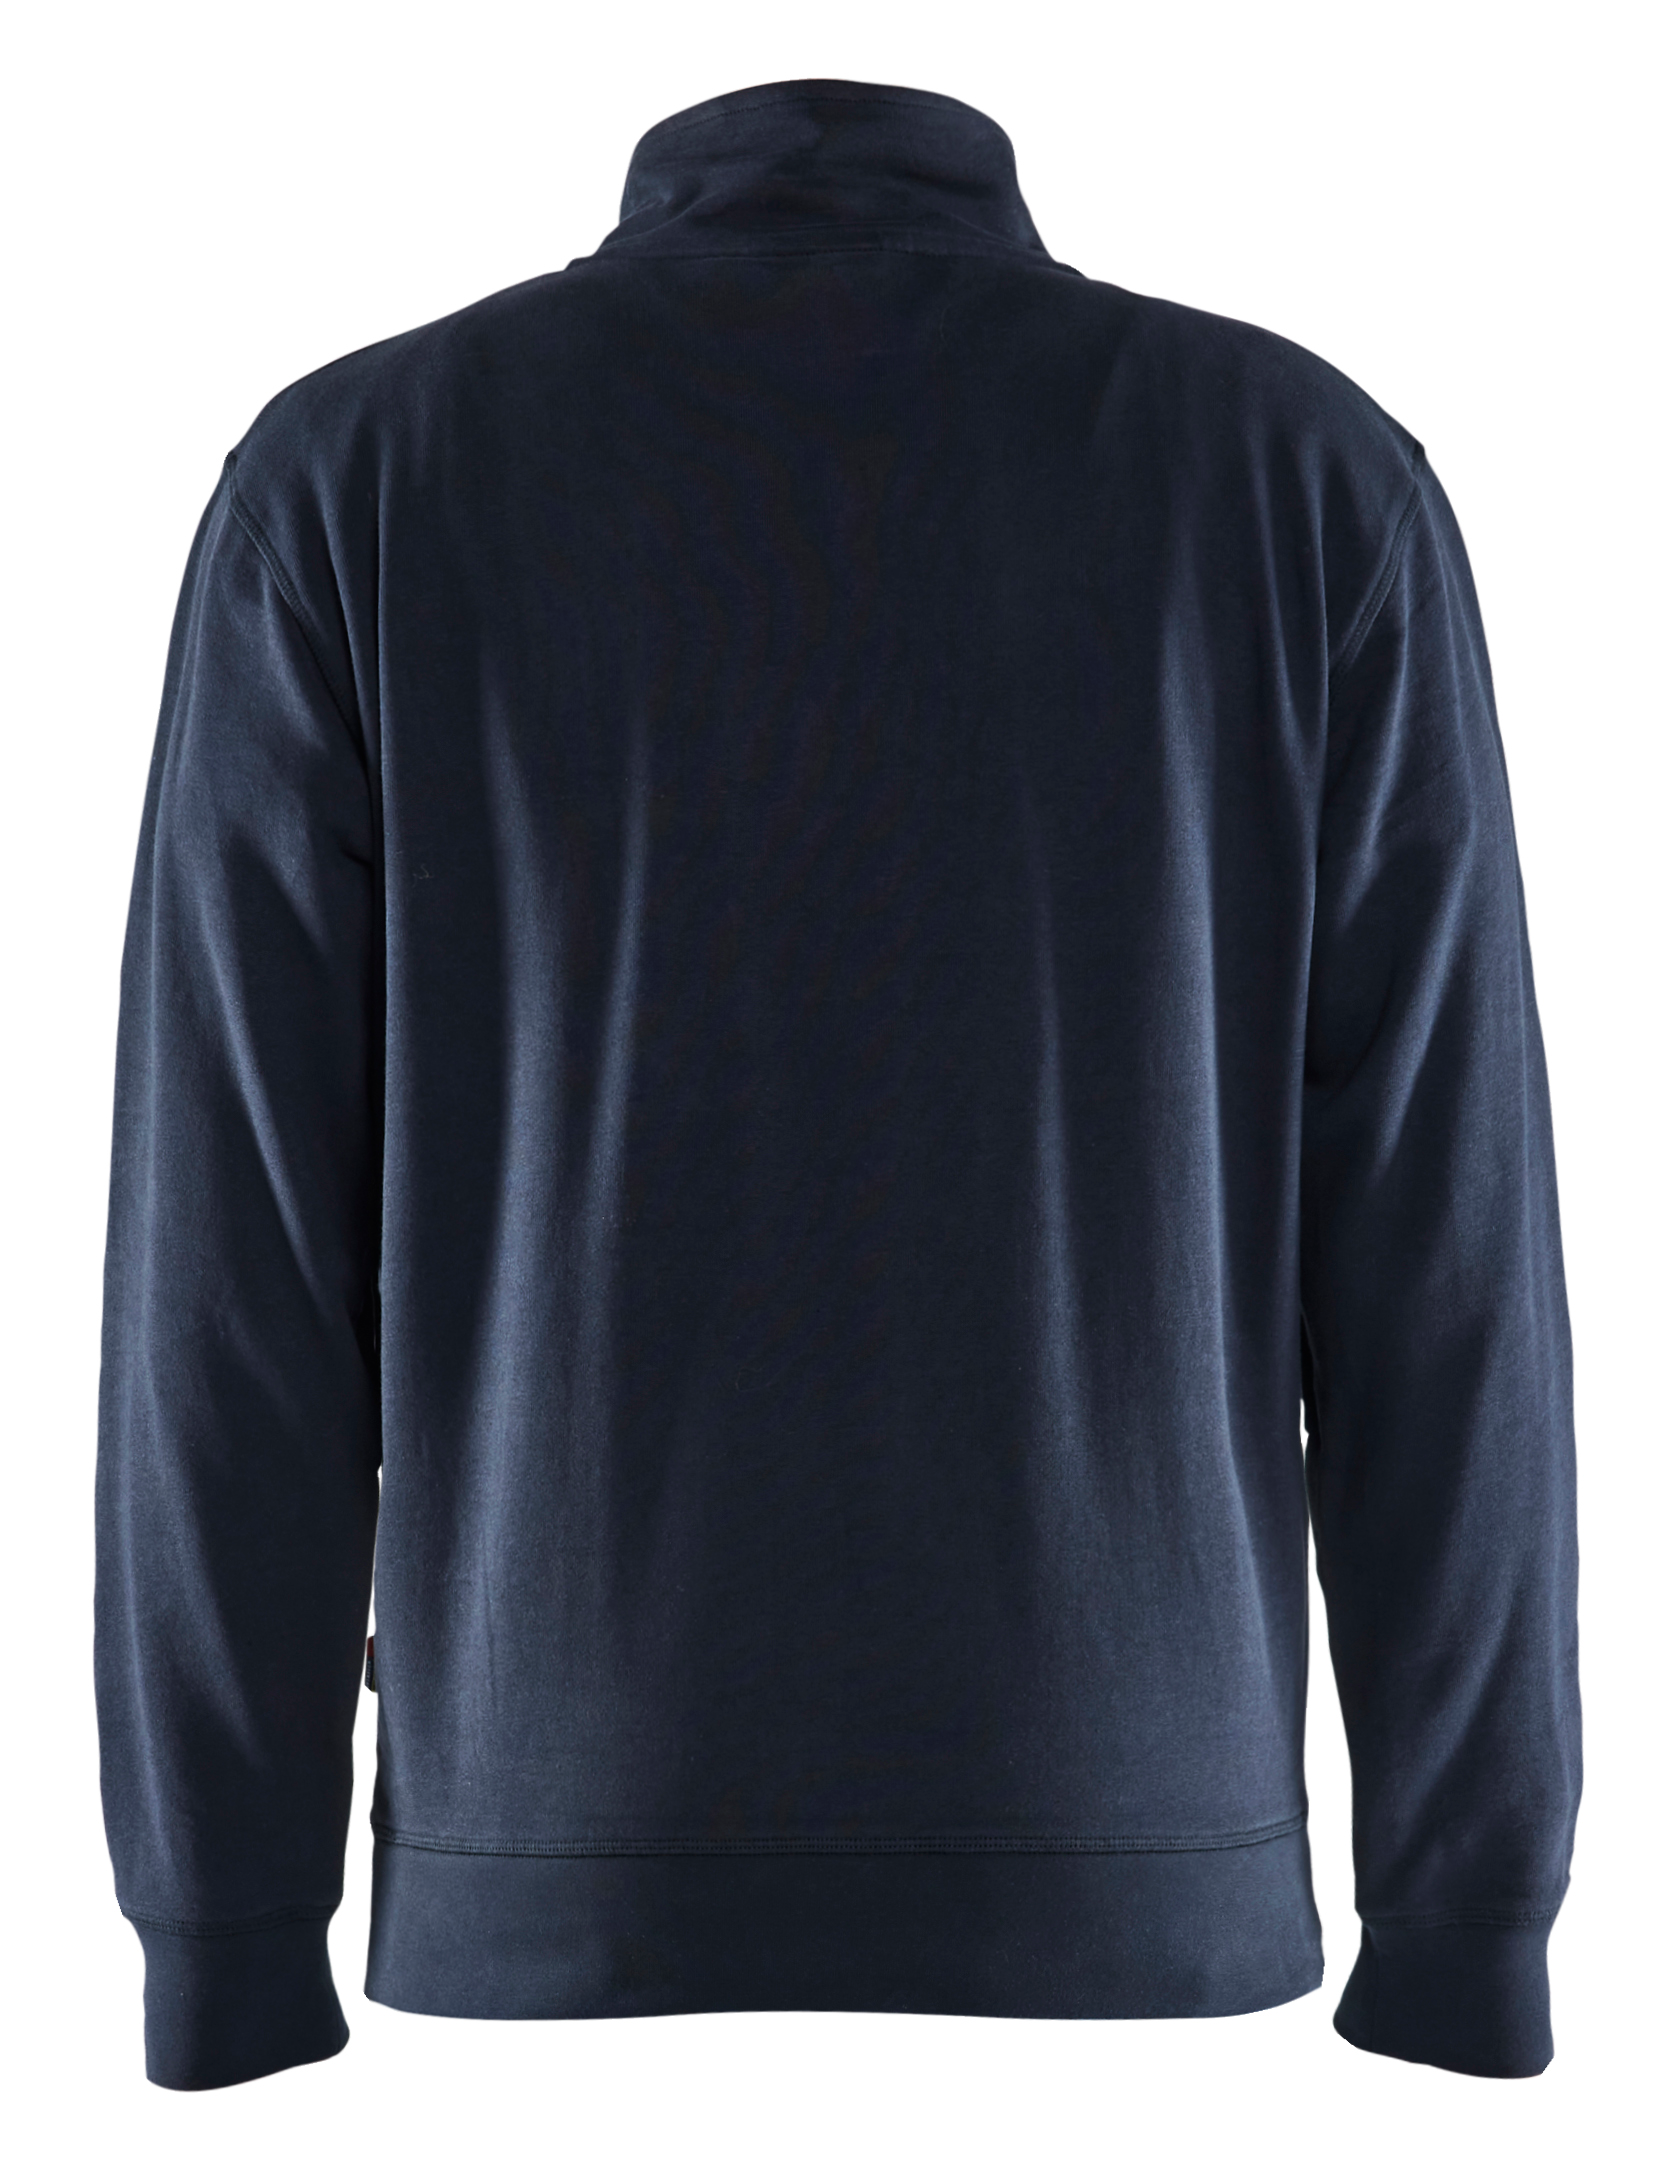 3353 1158 Blakläder Sweater mit 1/2 Reißverschluss 2-farbig, in 12 Farbkombinationen erhältlich, Kollektion INDUSTRIE